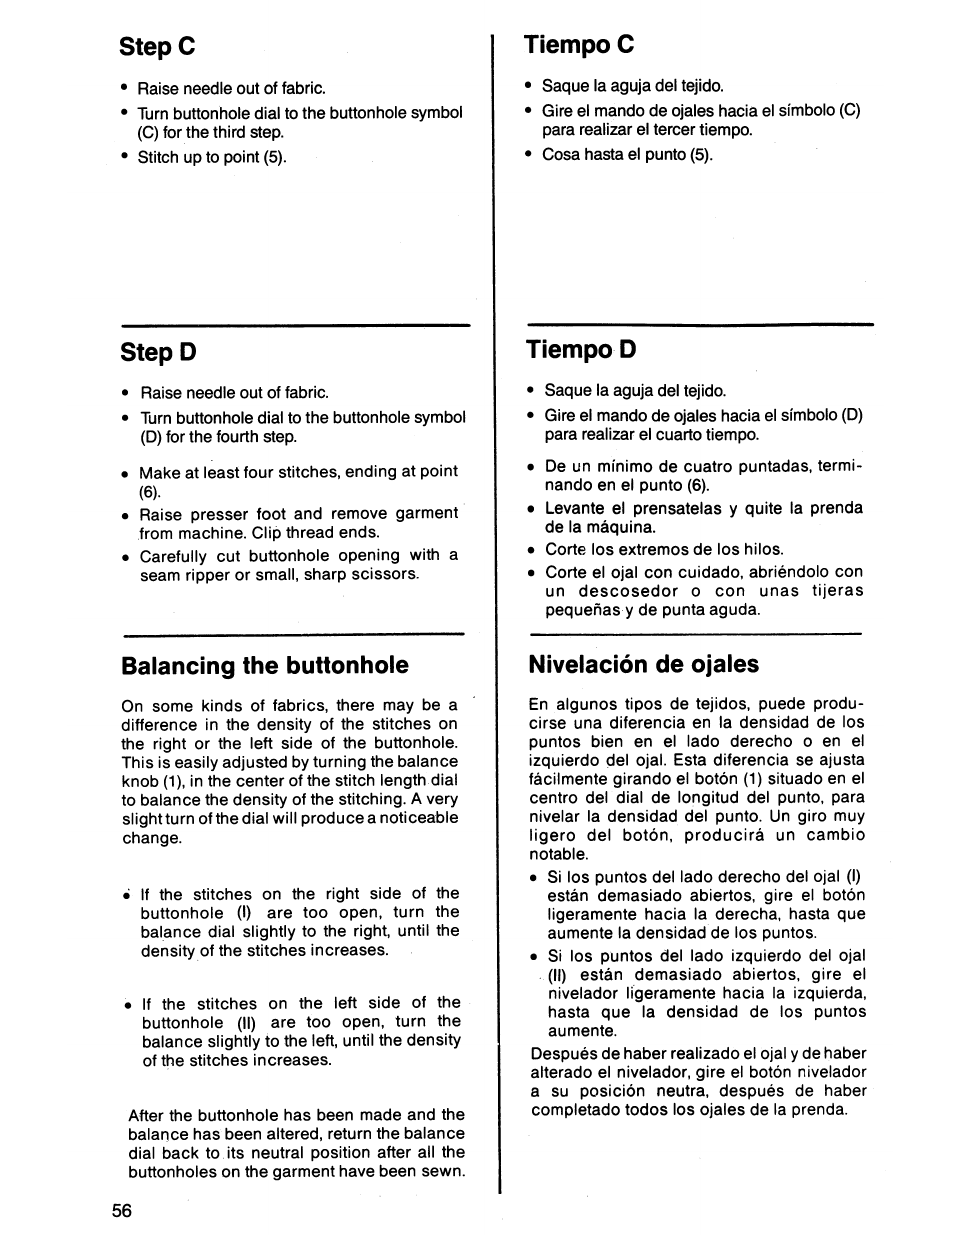 Step d, Balancing the buttonhole, Tiempo d | Niveiación de ojaies, Stepc, Tiempo c | SINGER 7011 User Manual | Page 58 / 78